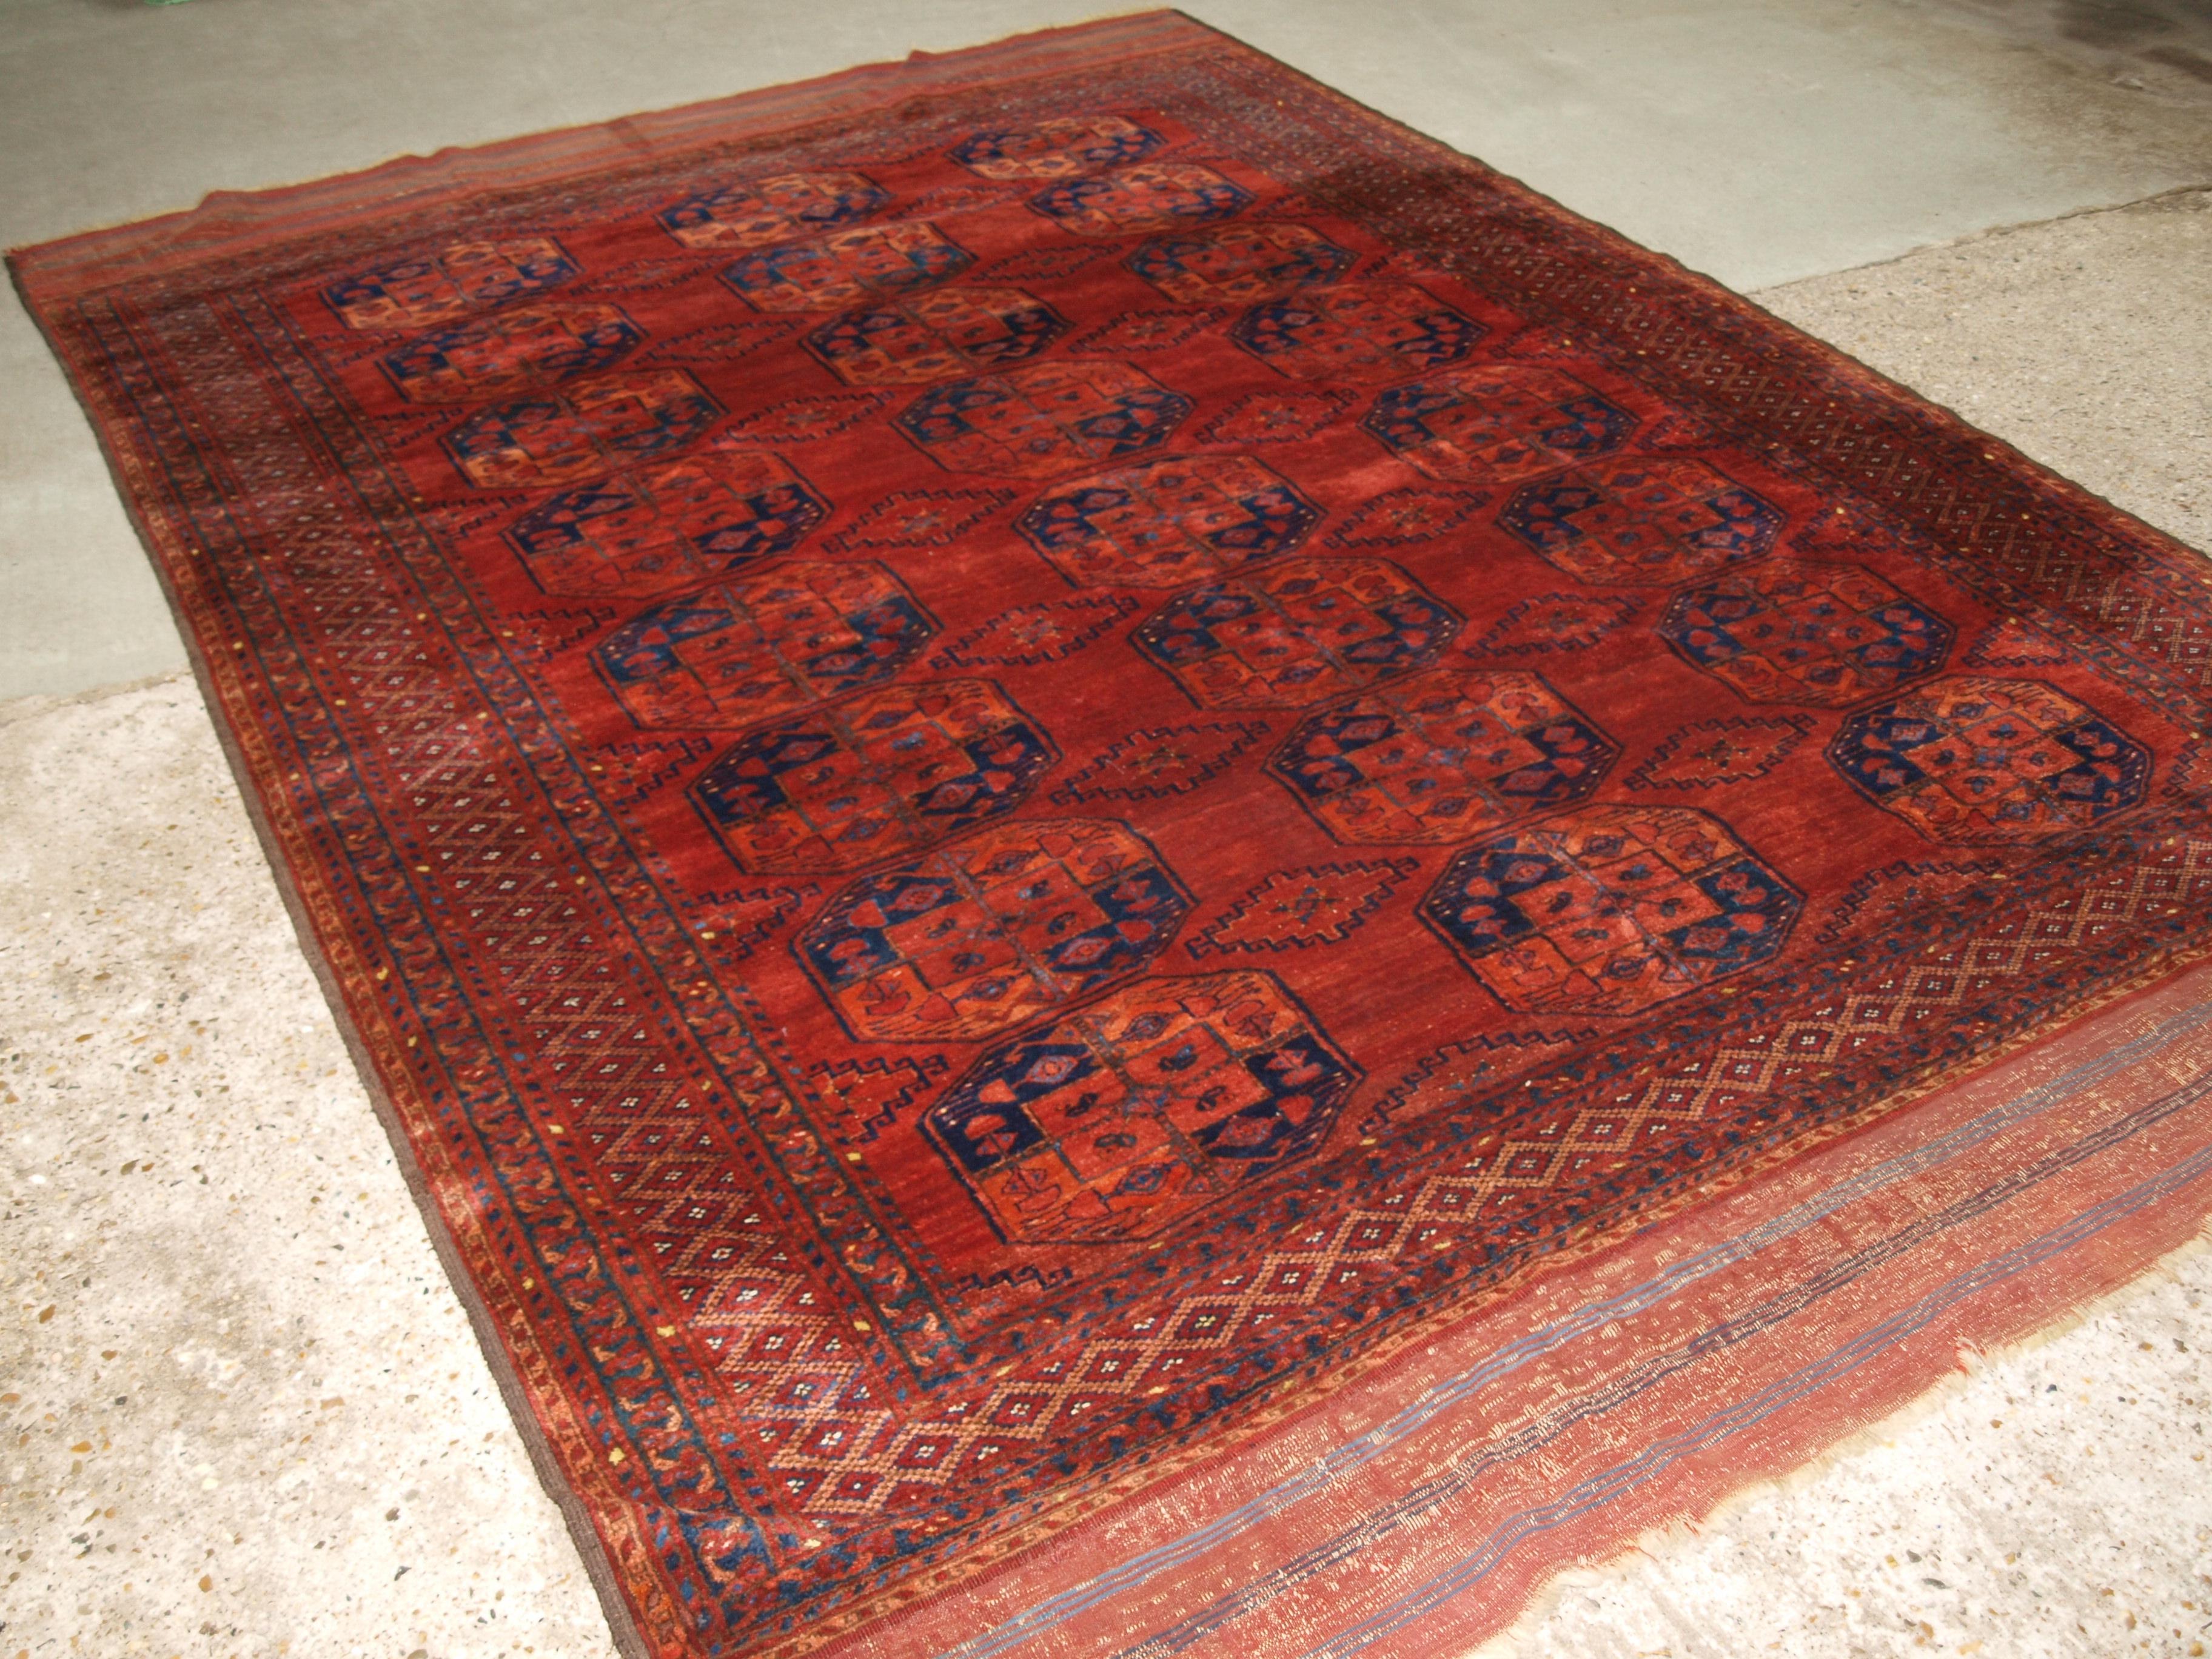 Un antique tapis principal Ersari Turkmen du nord de l'Afghanistan. Ce beau tapis comporte trois rangées de huit grandes goules avec une goule mineure en forme de losange. Les couleurs de ce tapis sont vraiment exceptionnelles et les images ne leur